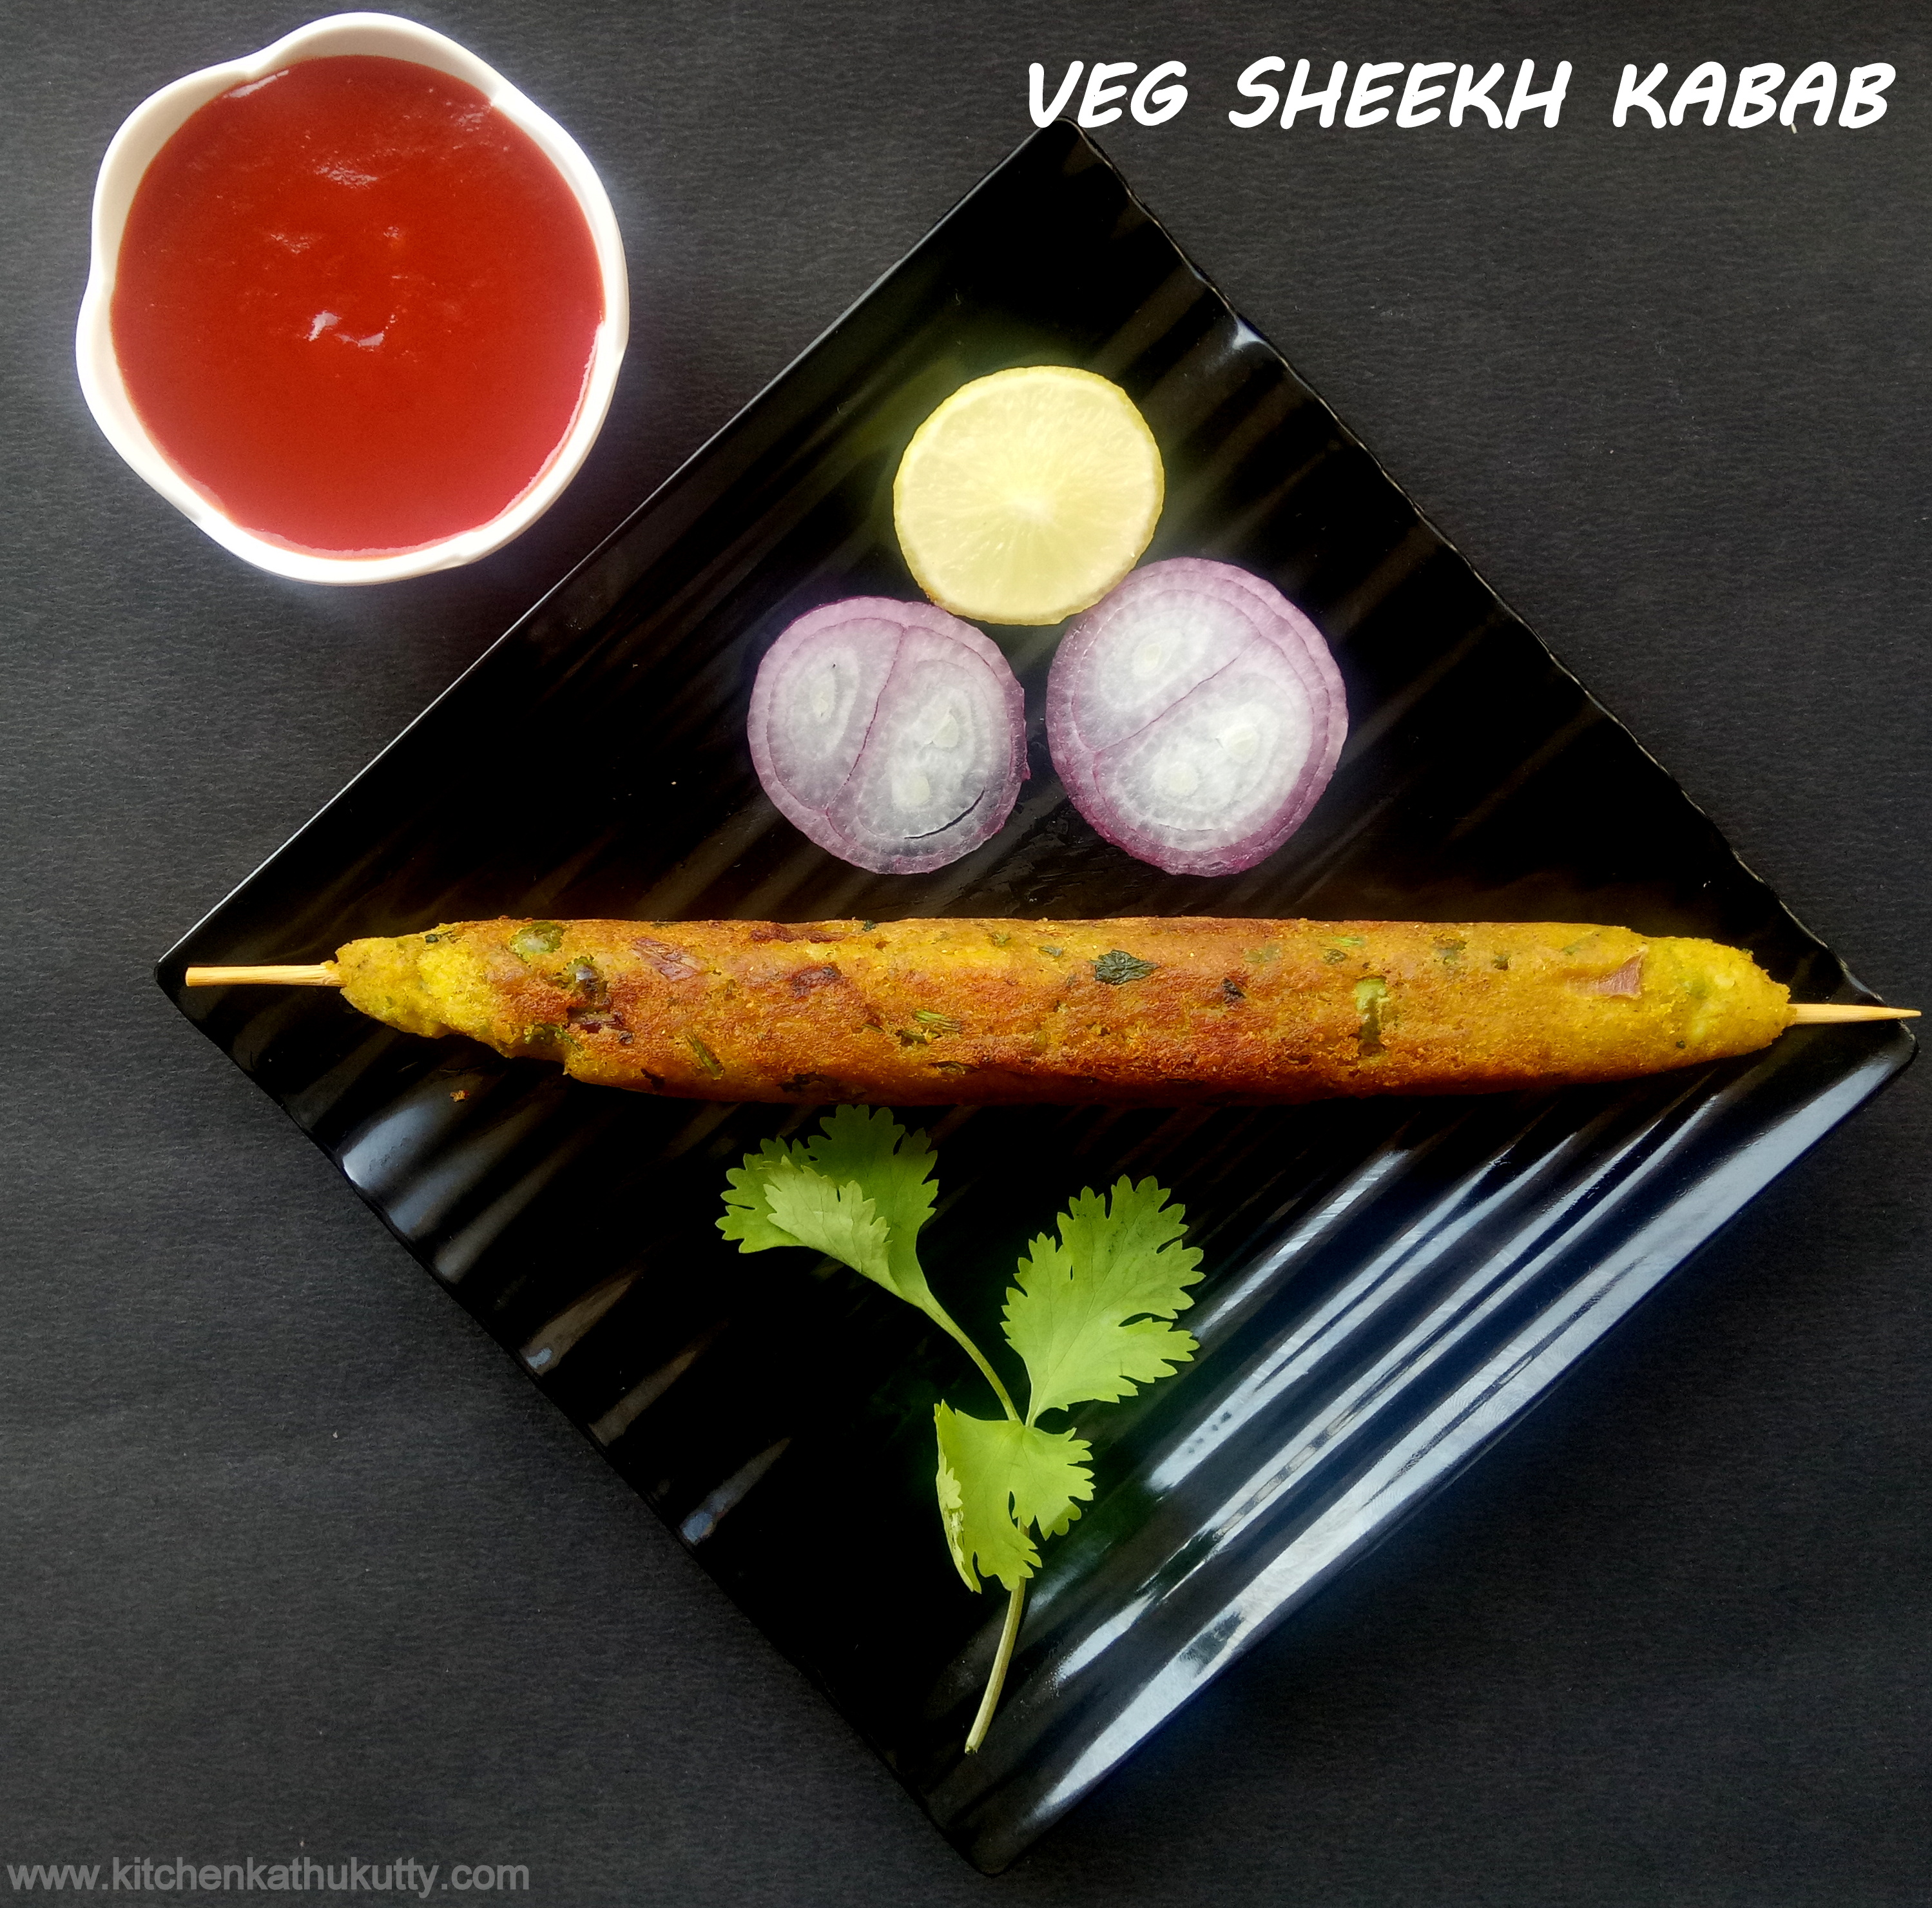 Veg Seekh Kabab Recipe|Veg Kebab Recipe